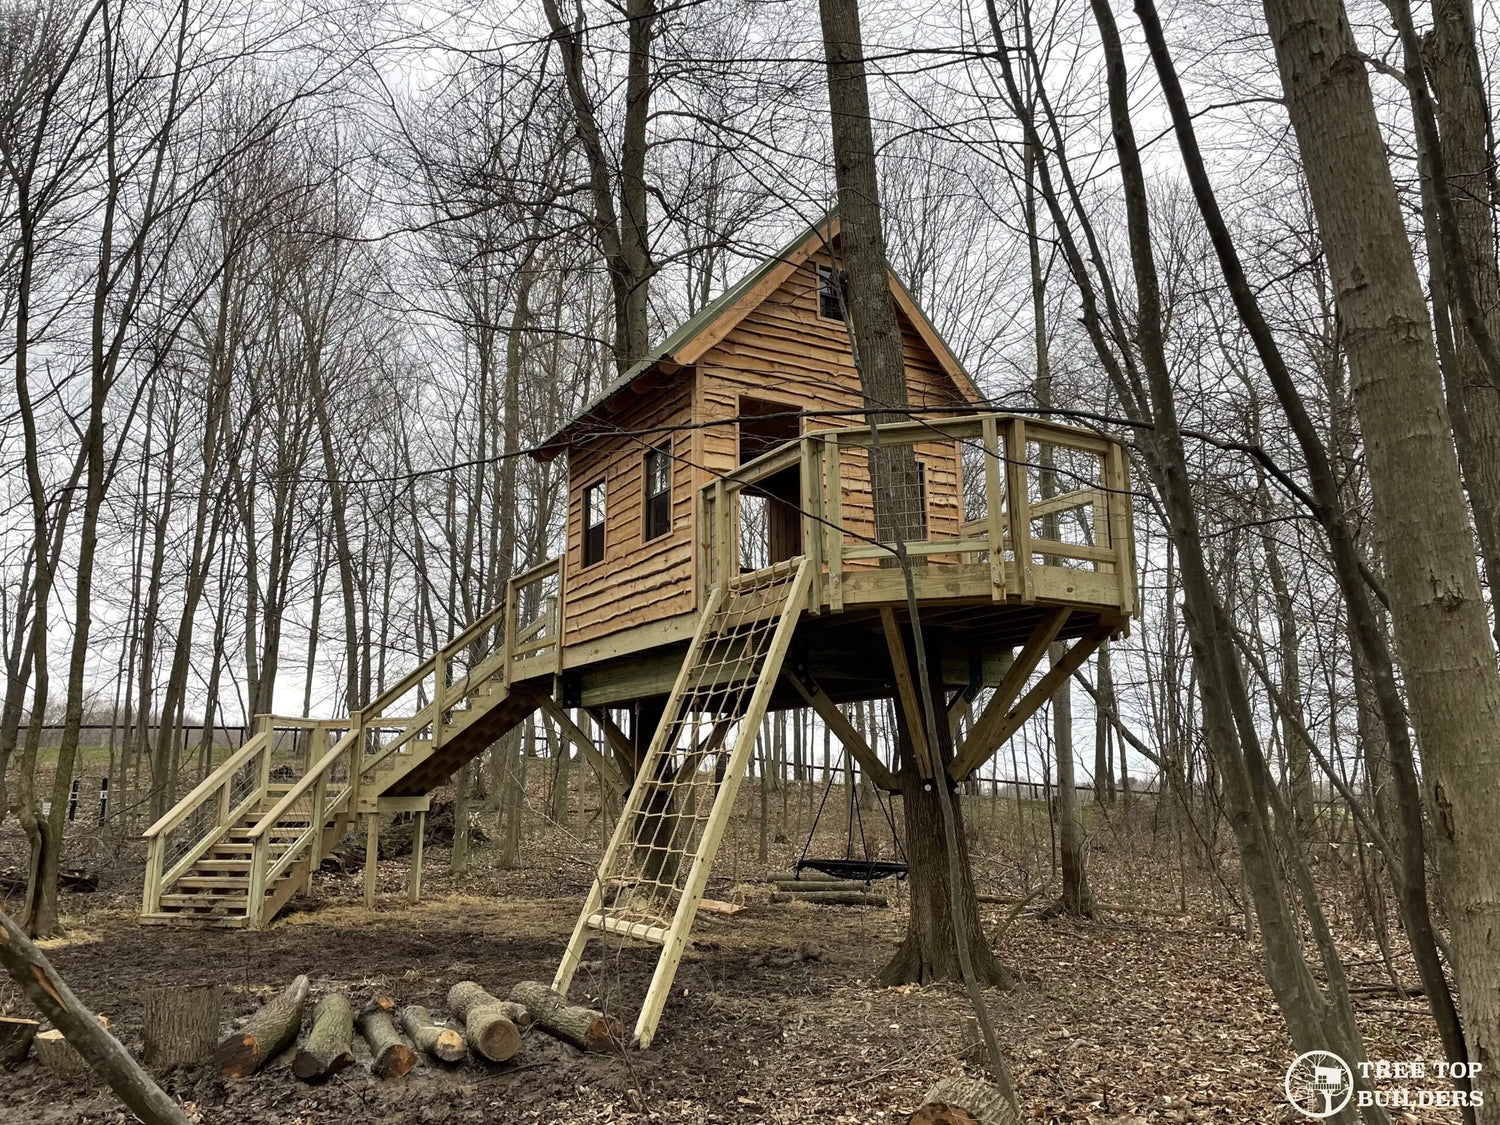 Tree Top Builders1 - Ohio Treehouse